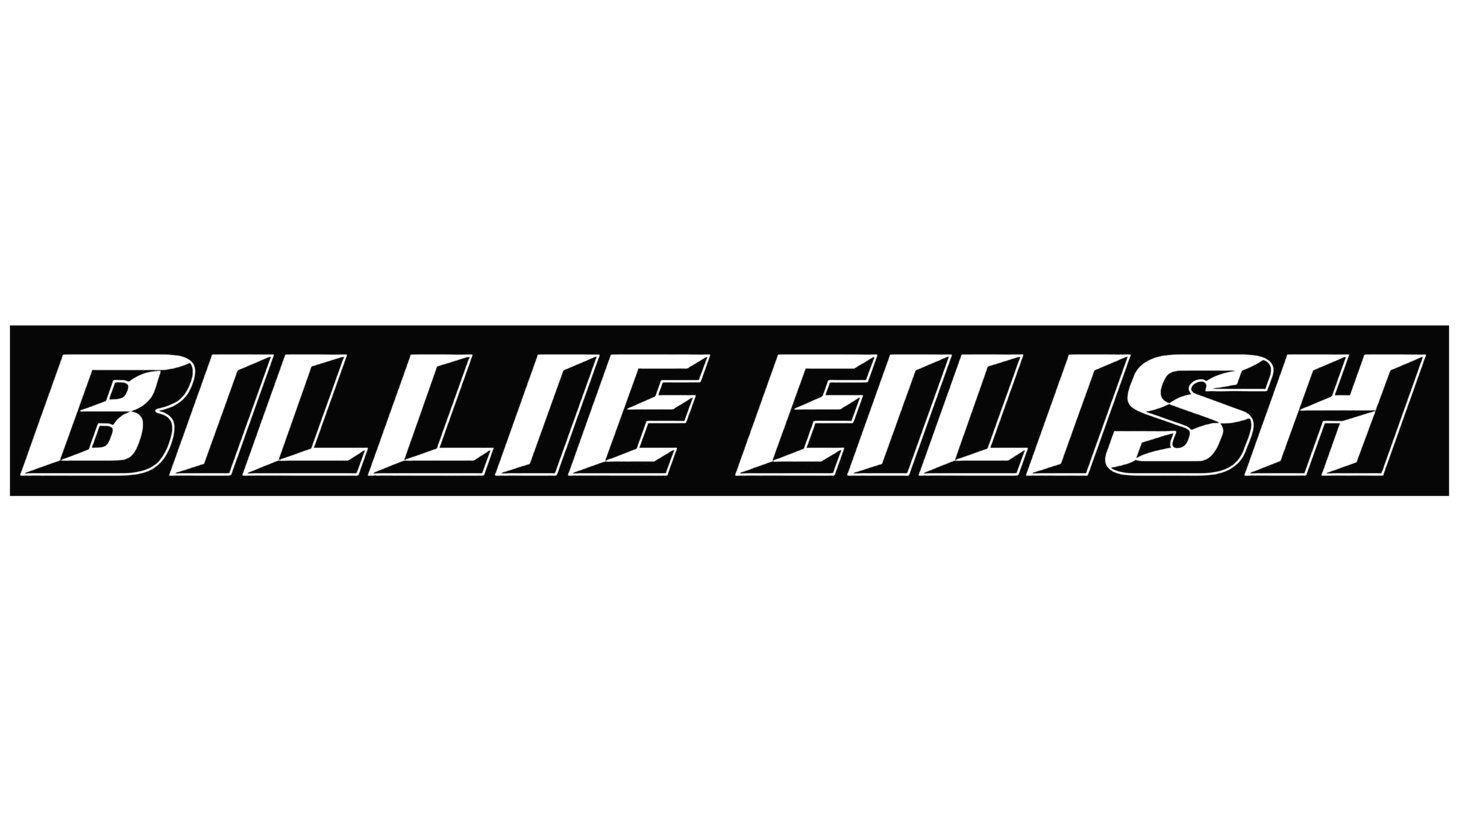 Billie eilish sign 2018 2019